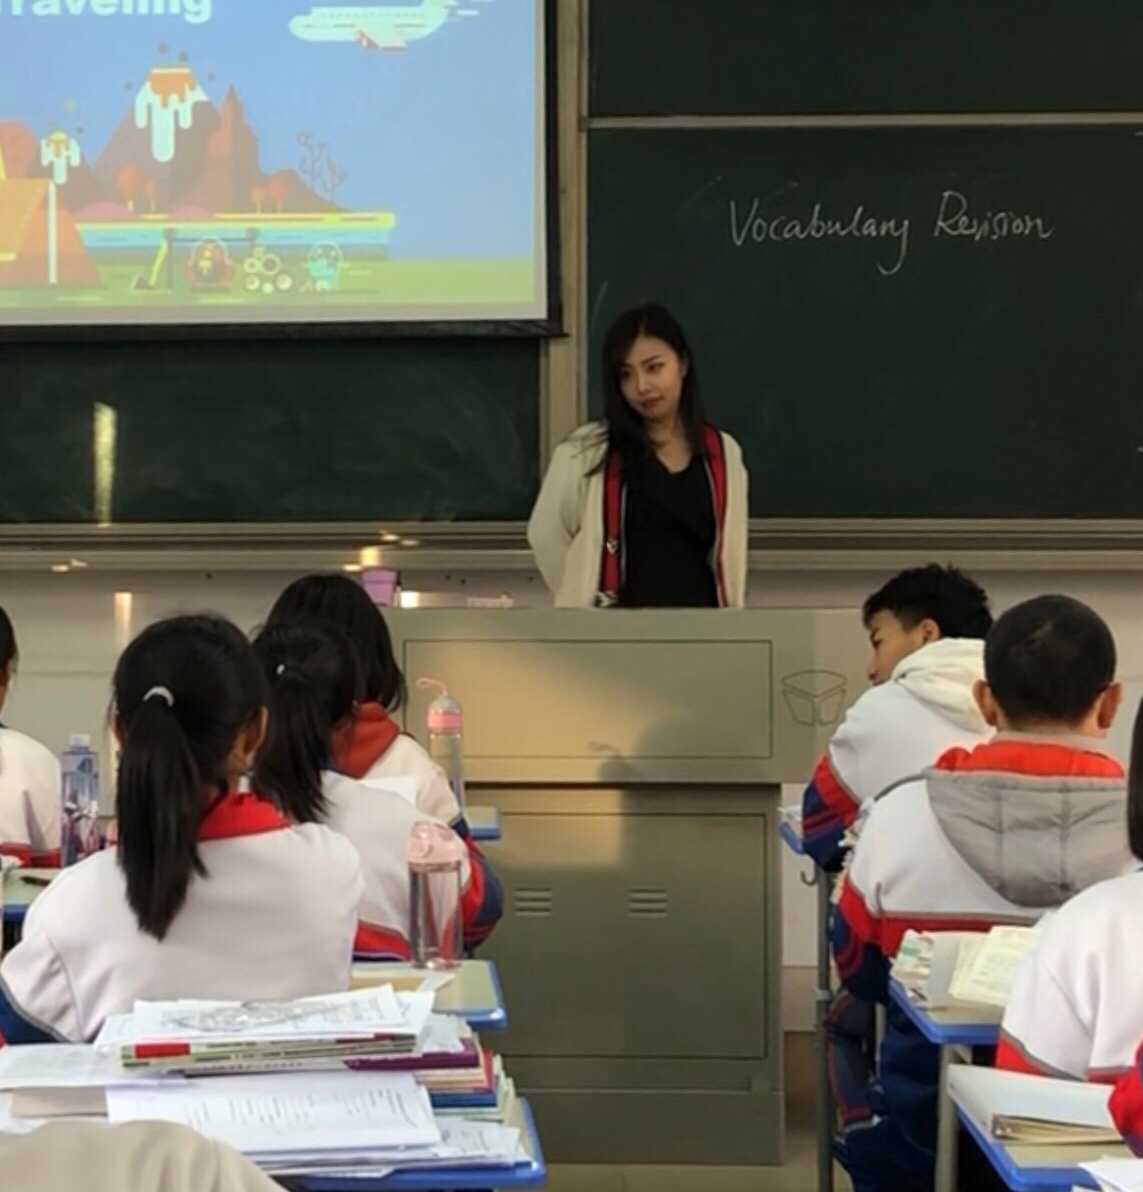 [旧闻]江苏32岁英语女老师畸恋15岁男学生